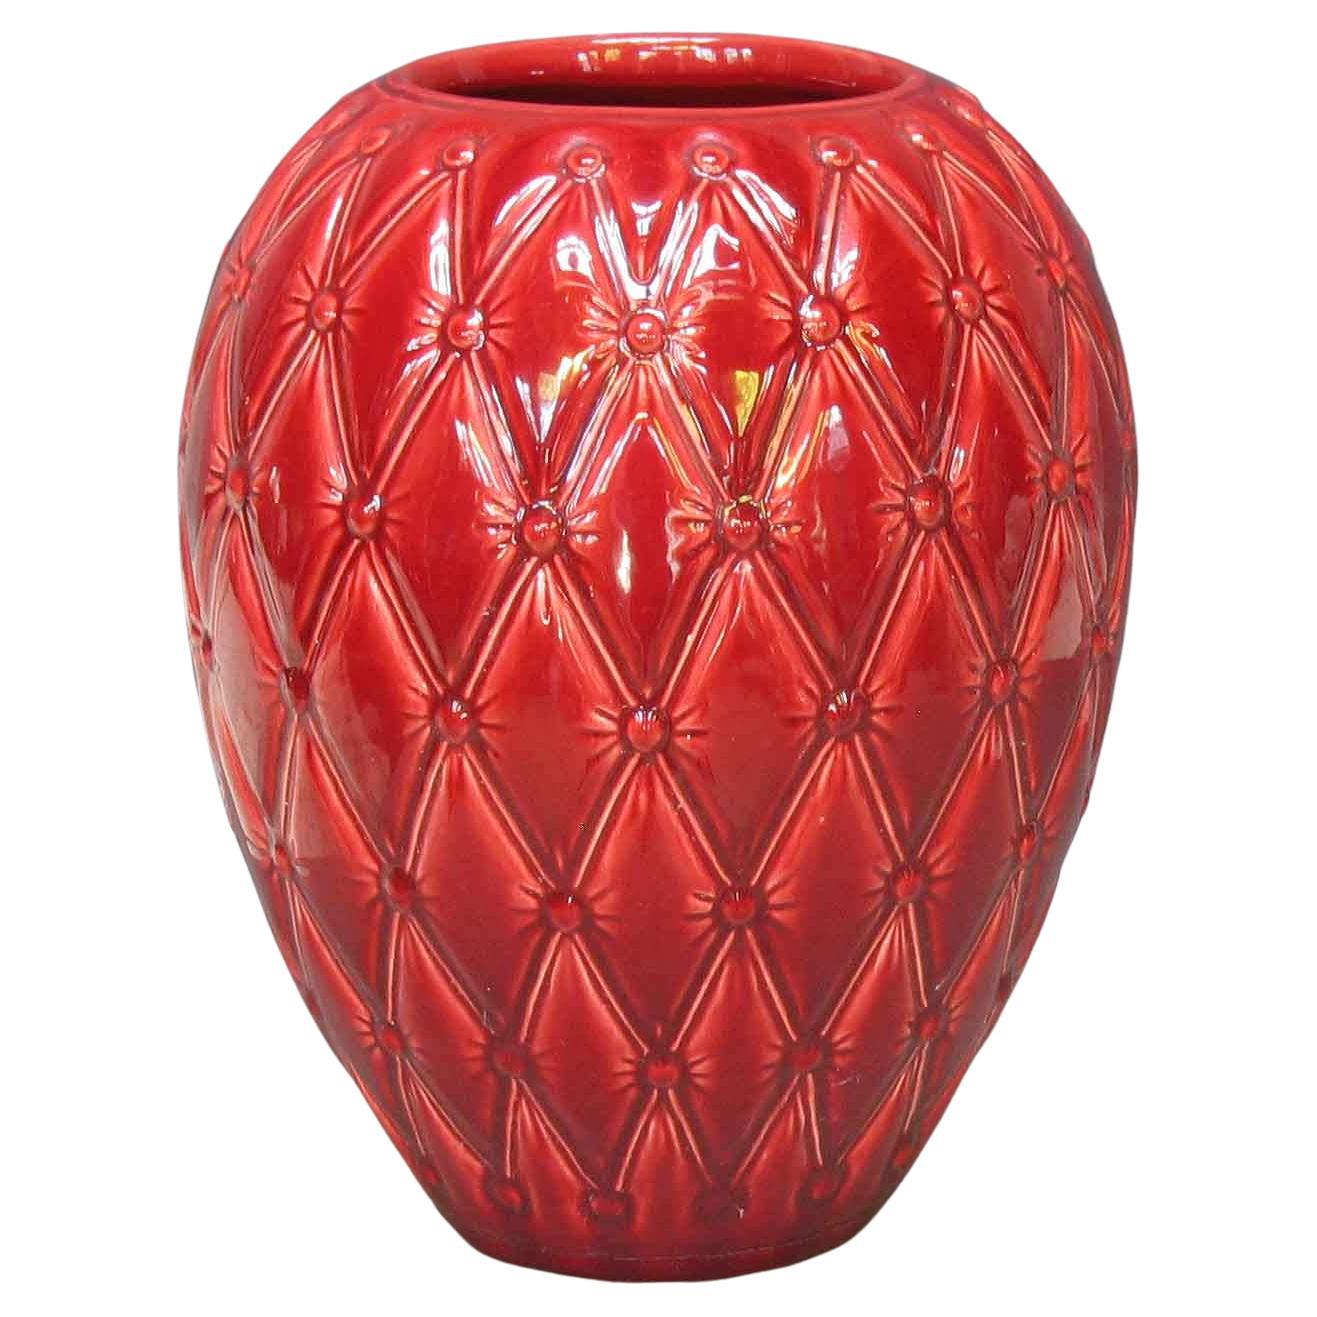 Large Red Glazed Art Studio Pottery Vase For Sale